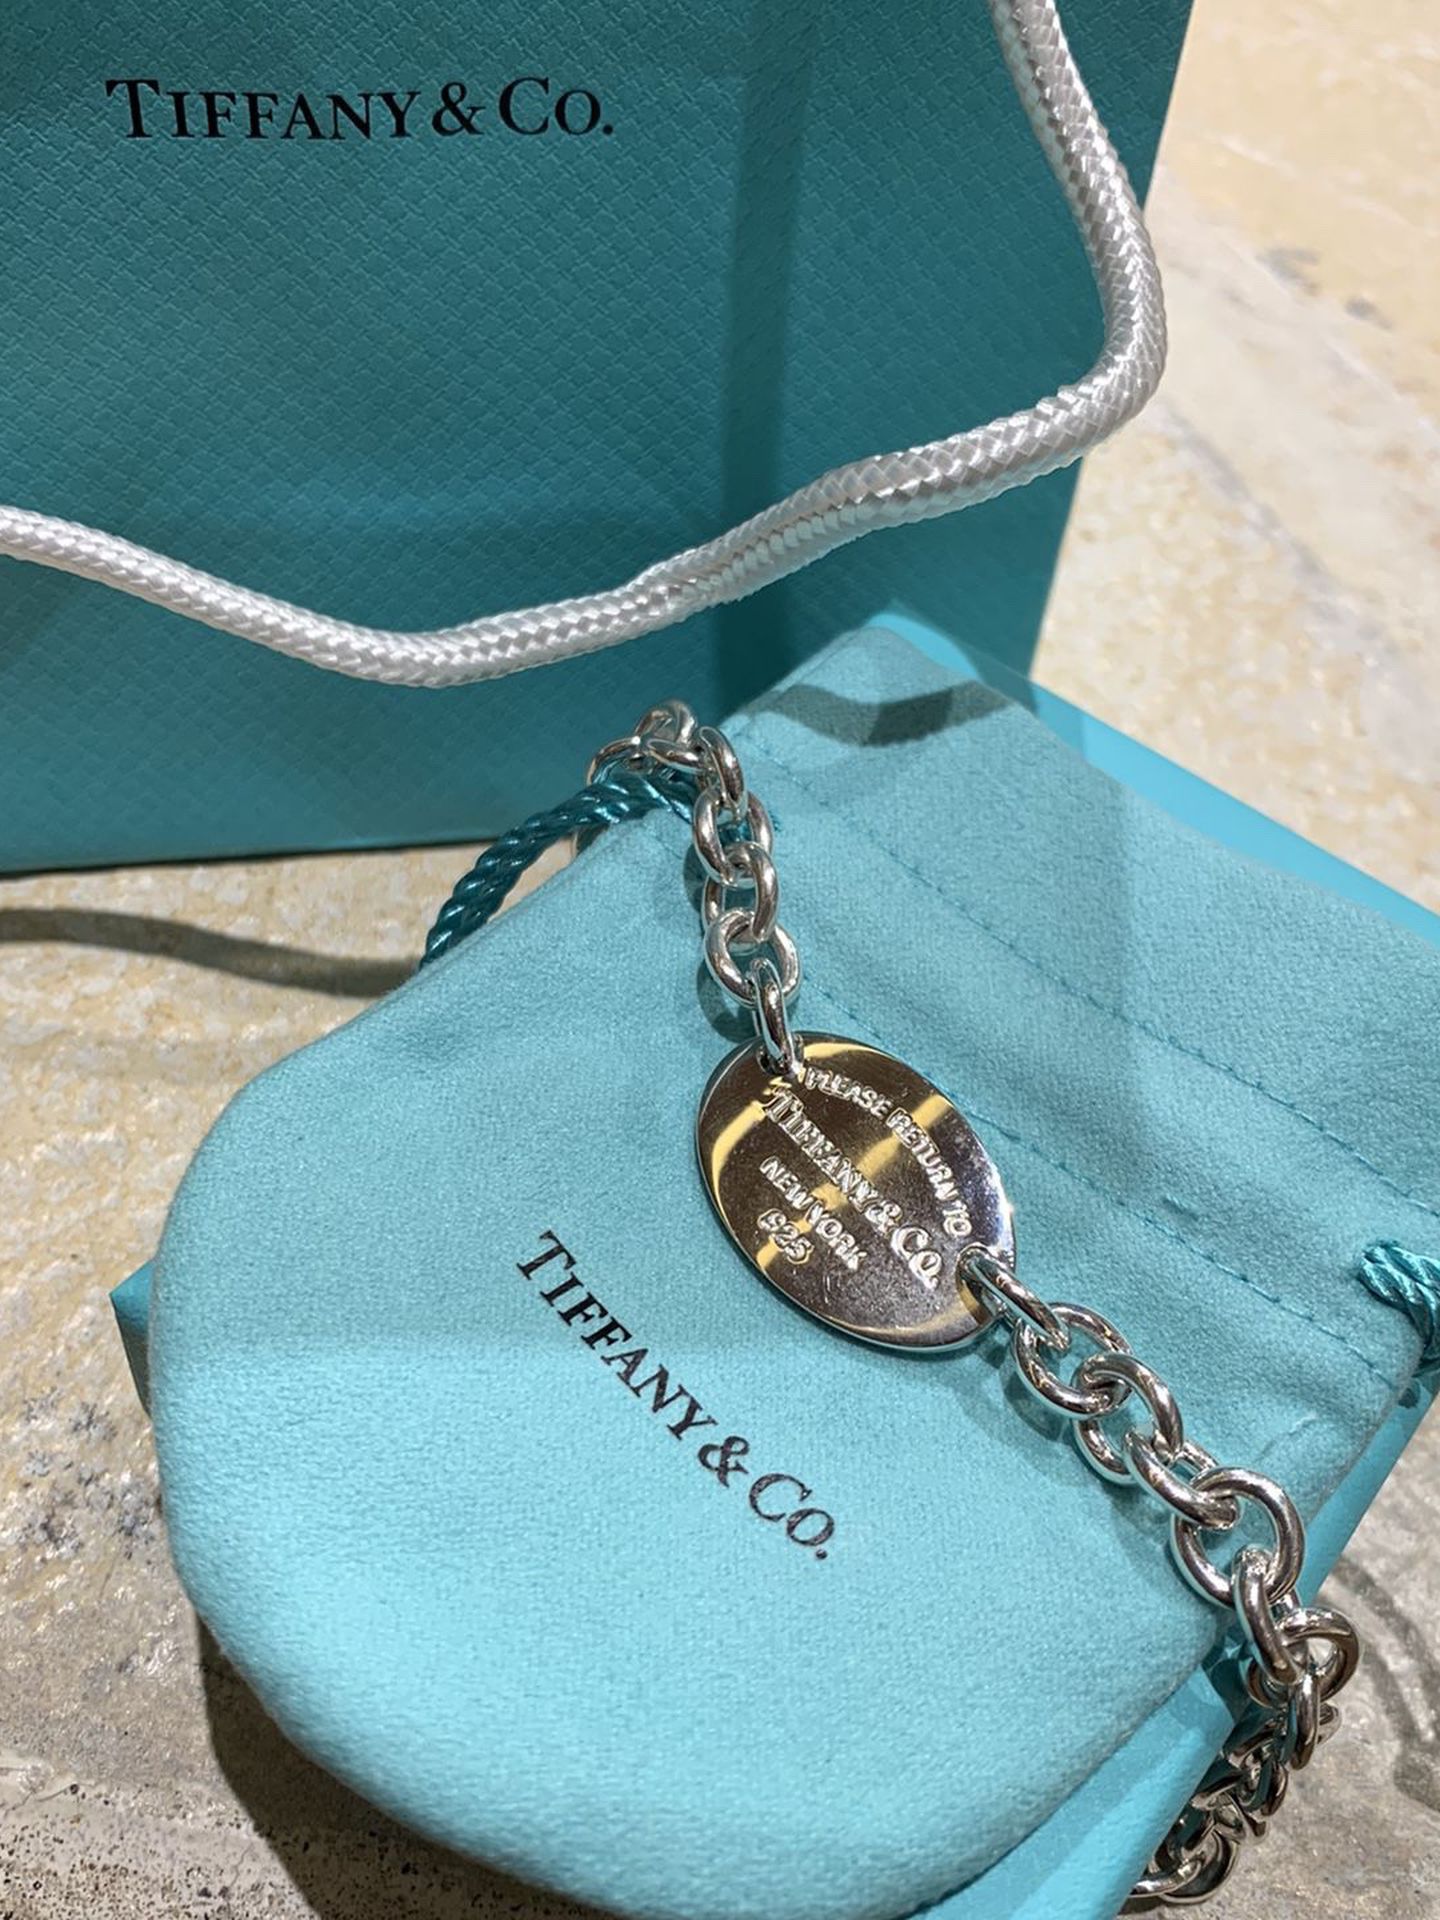 Tiffany & Co. Oval Bracelet $200